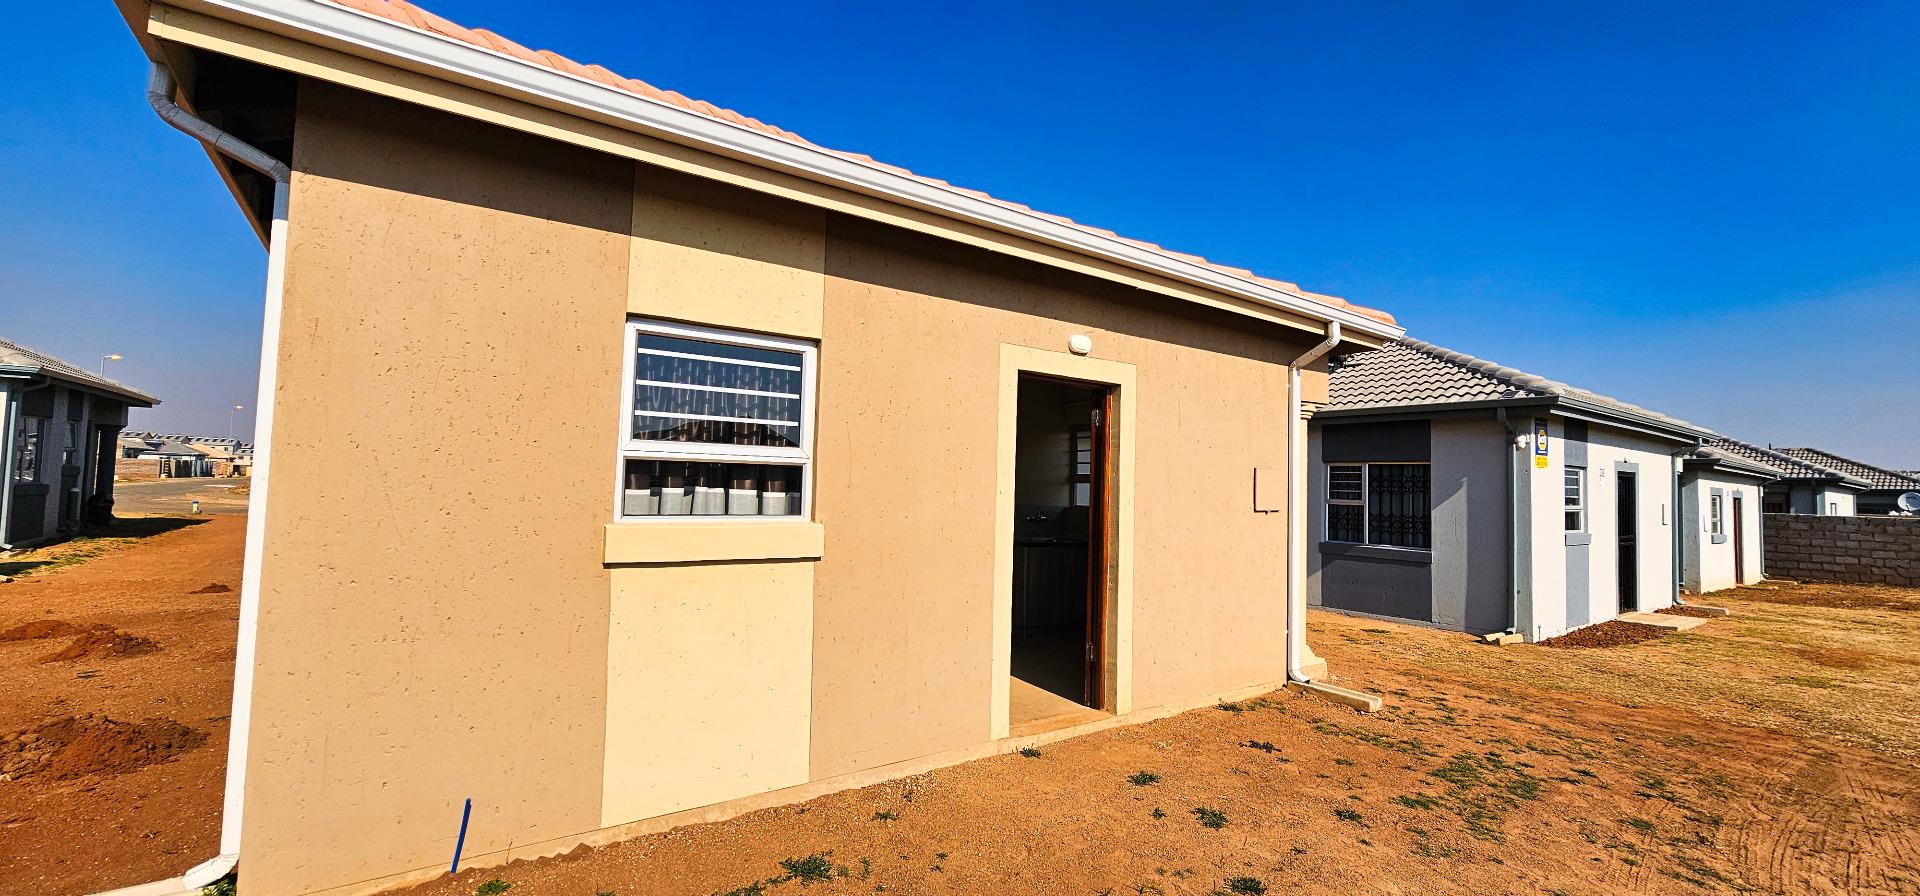 3 Bedroom  House for Sale in Boksburg - Gauteng